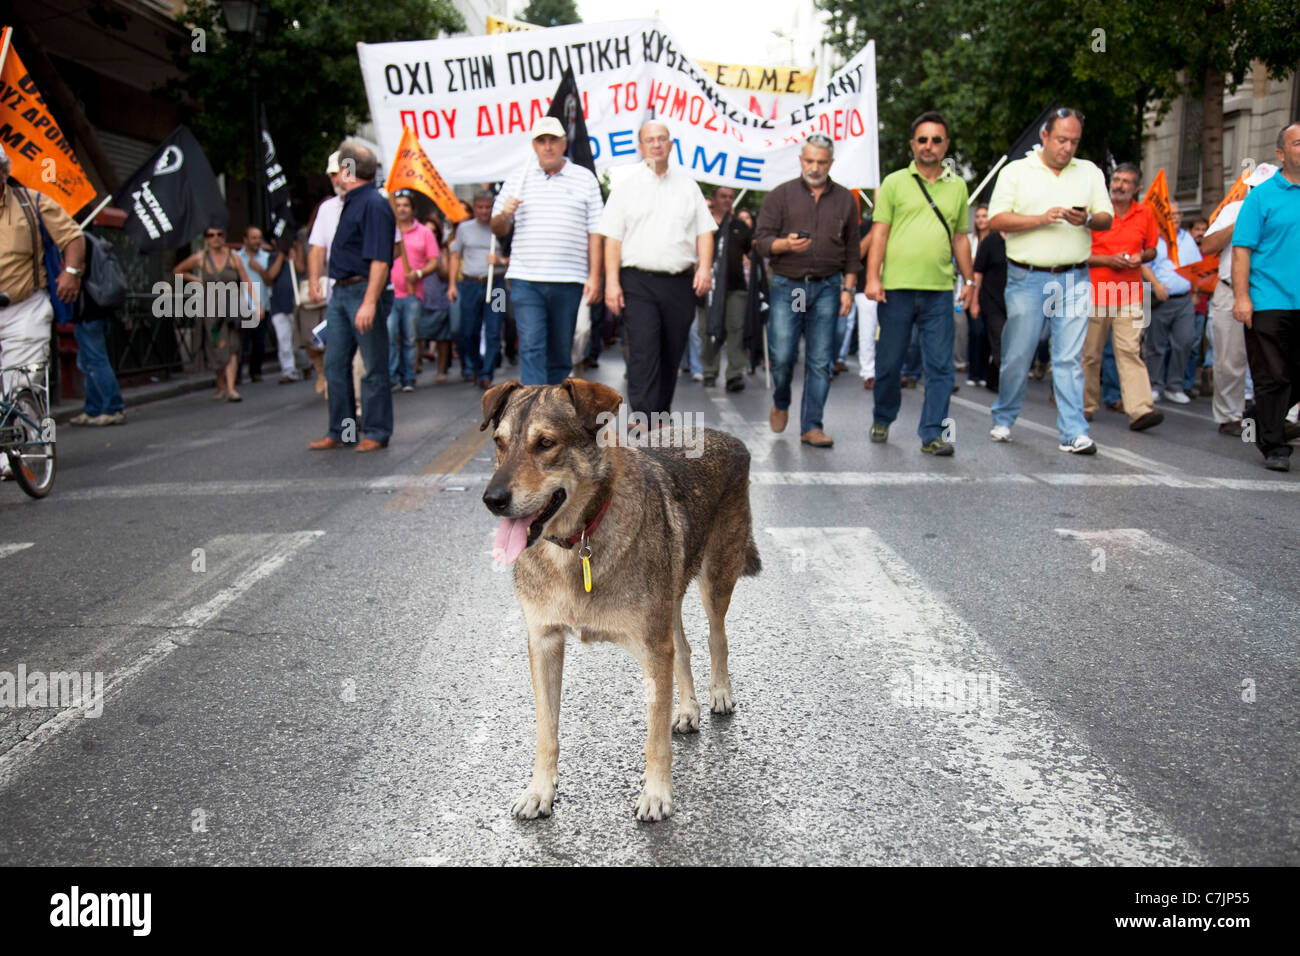 Dios demo en el mes de marzo en la manifestación contra las medidas de austeridad y las reformas educativas previstas en Atenas, Grecia. Foto de stock